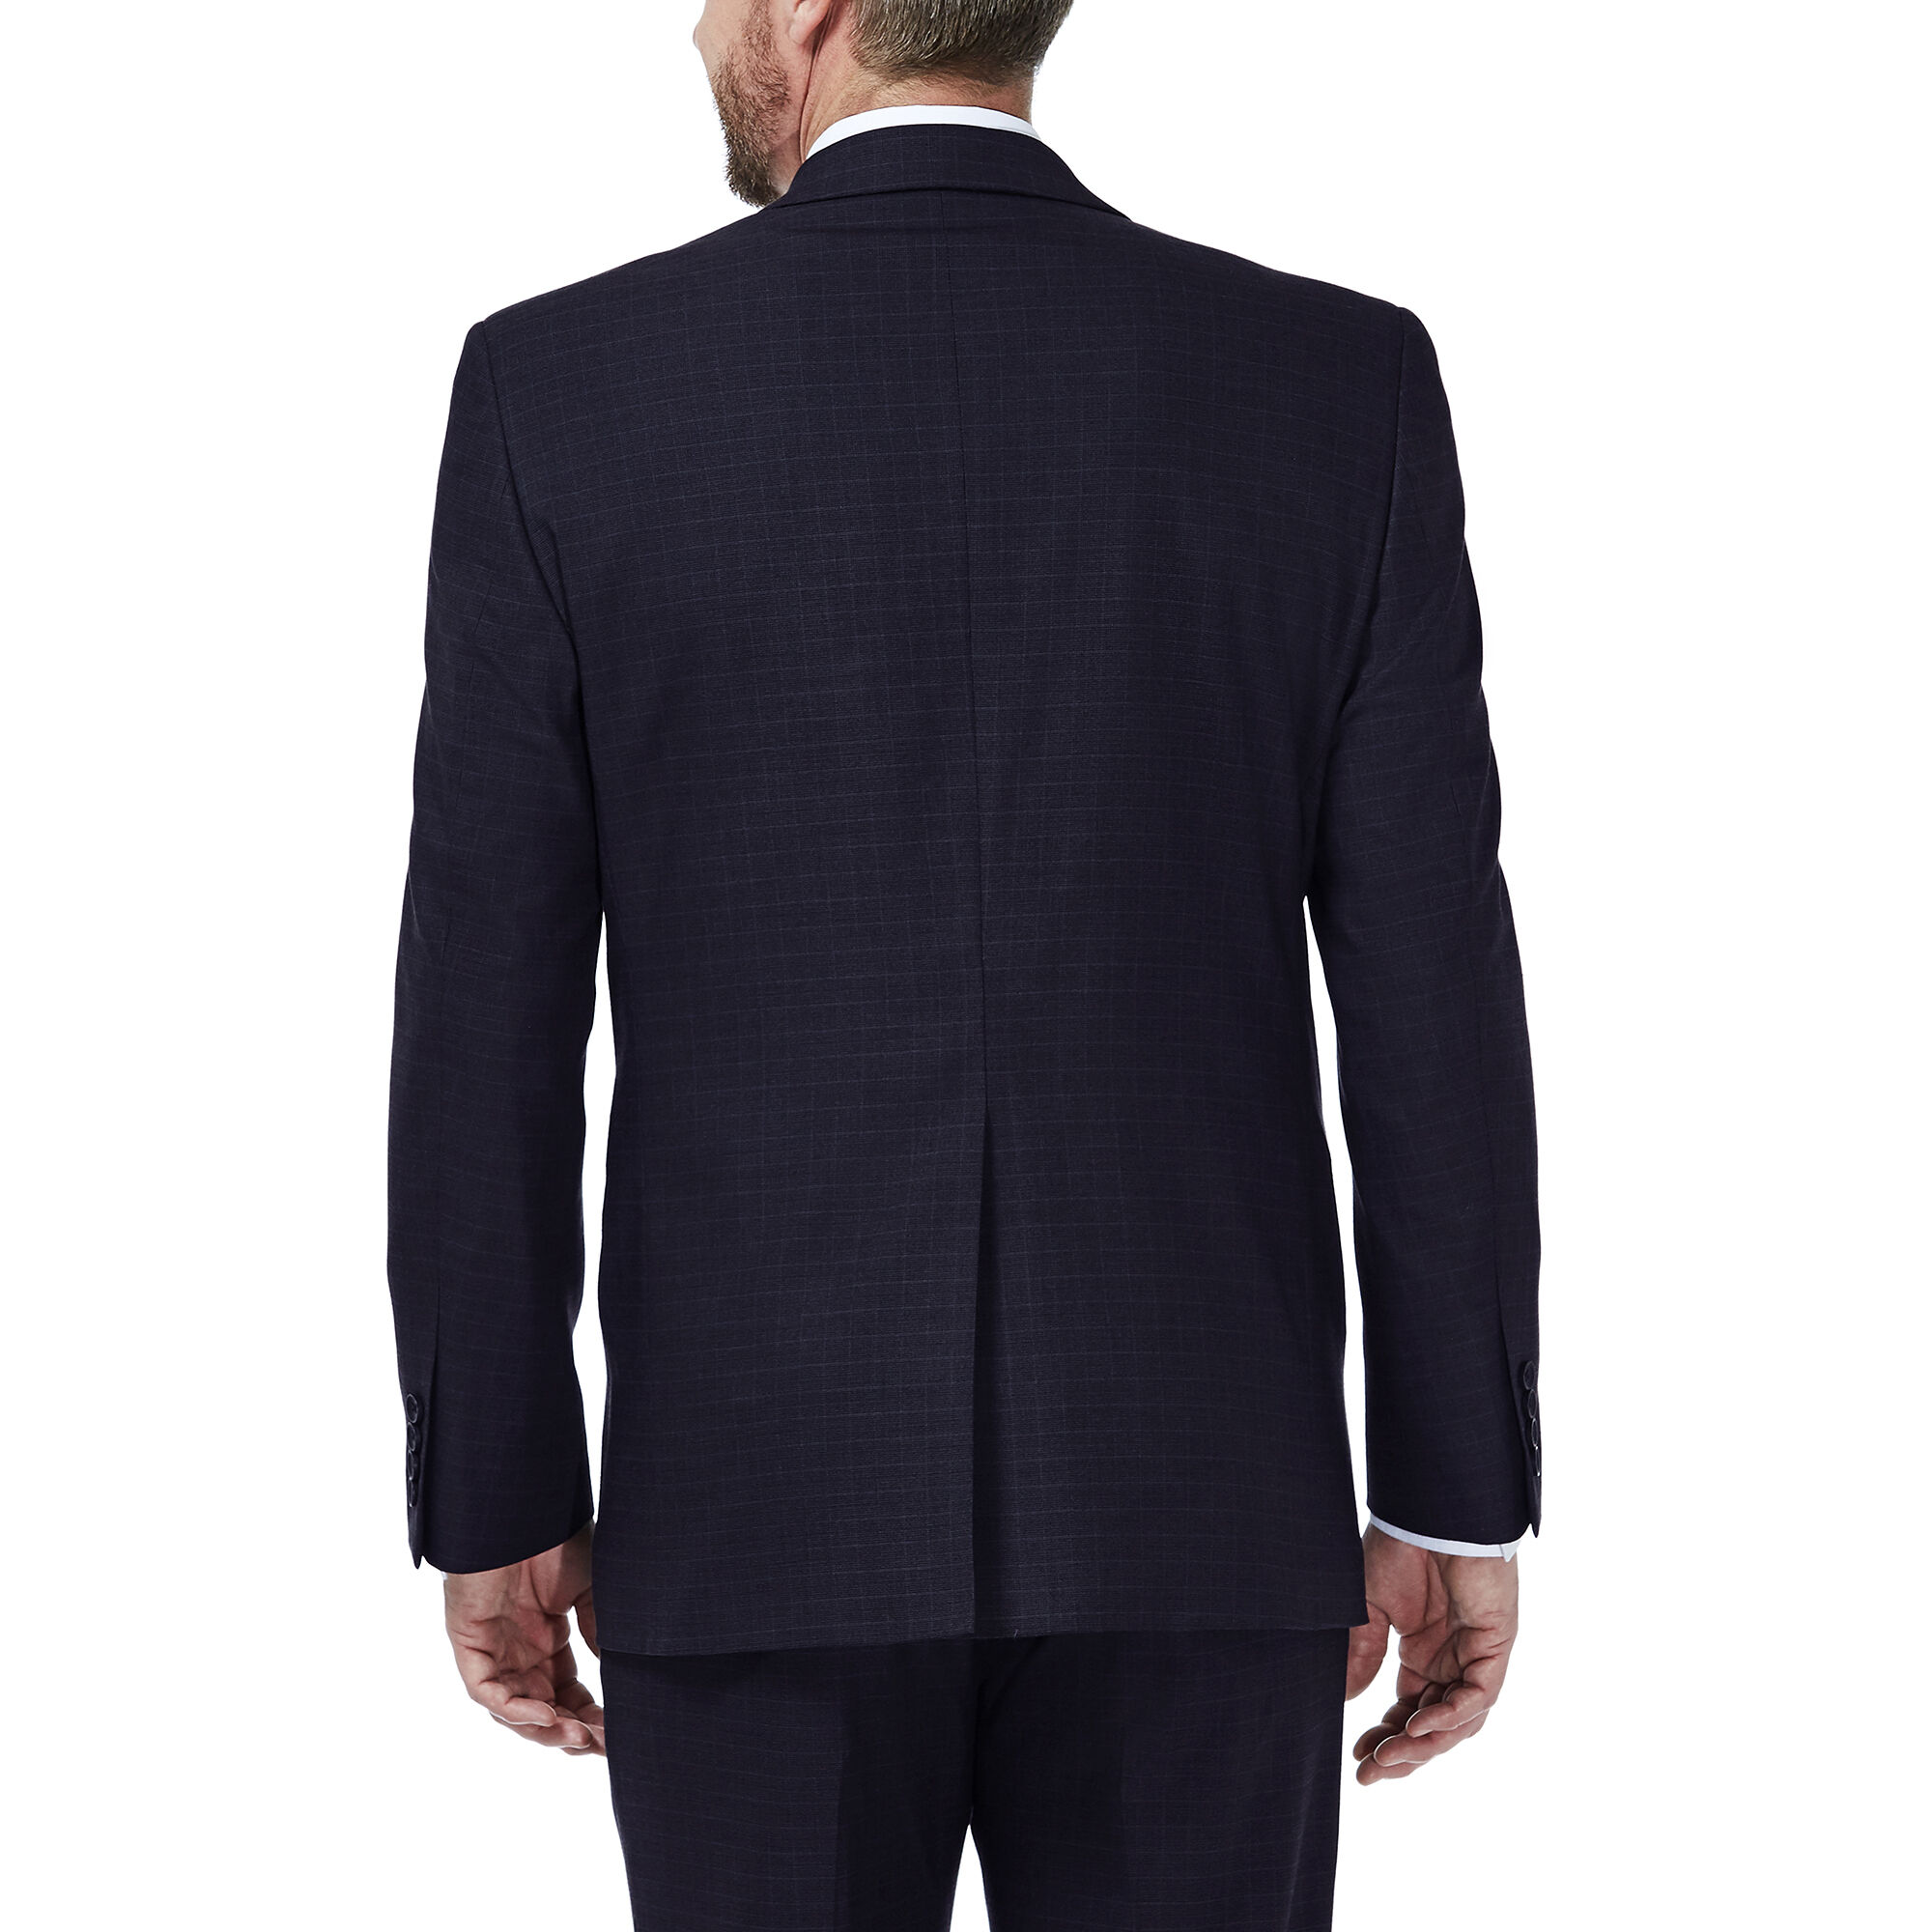 J.M. Haggar Deco Grid Suit Jacket